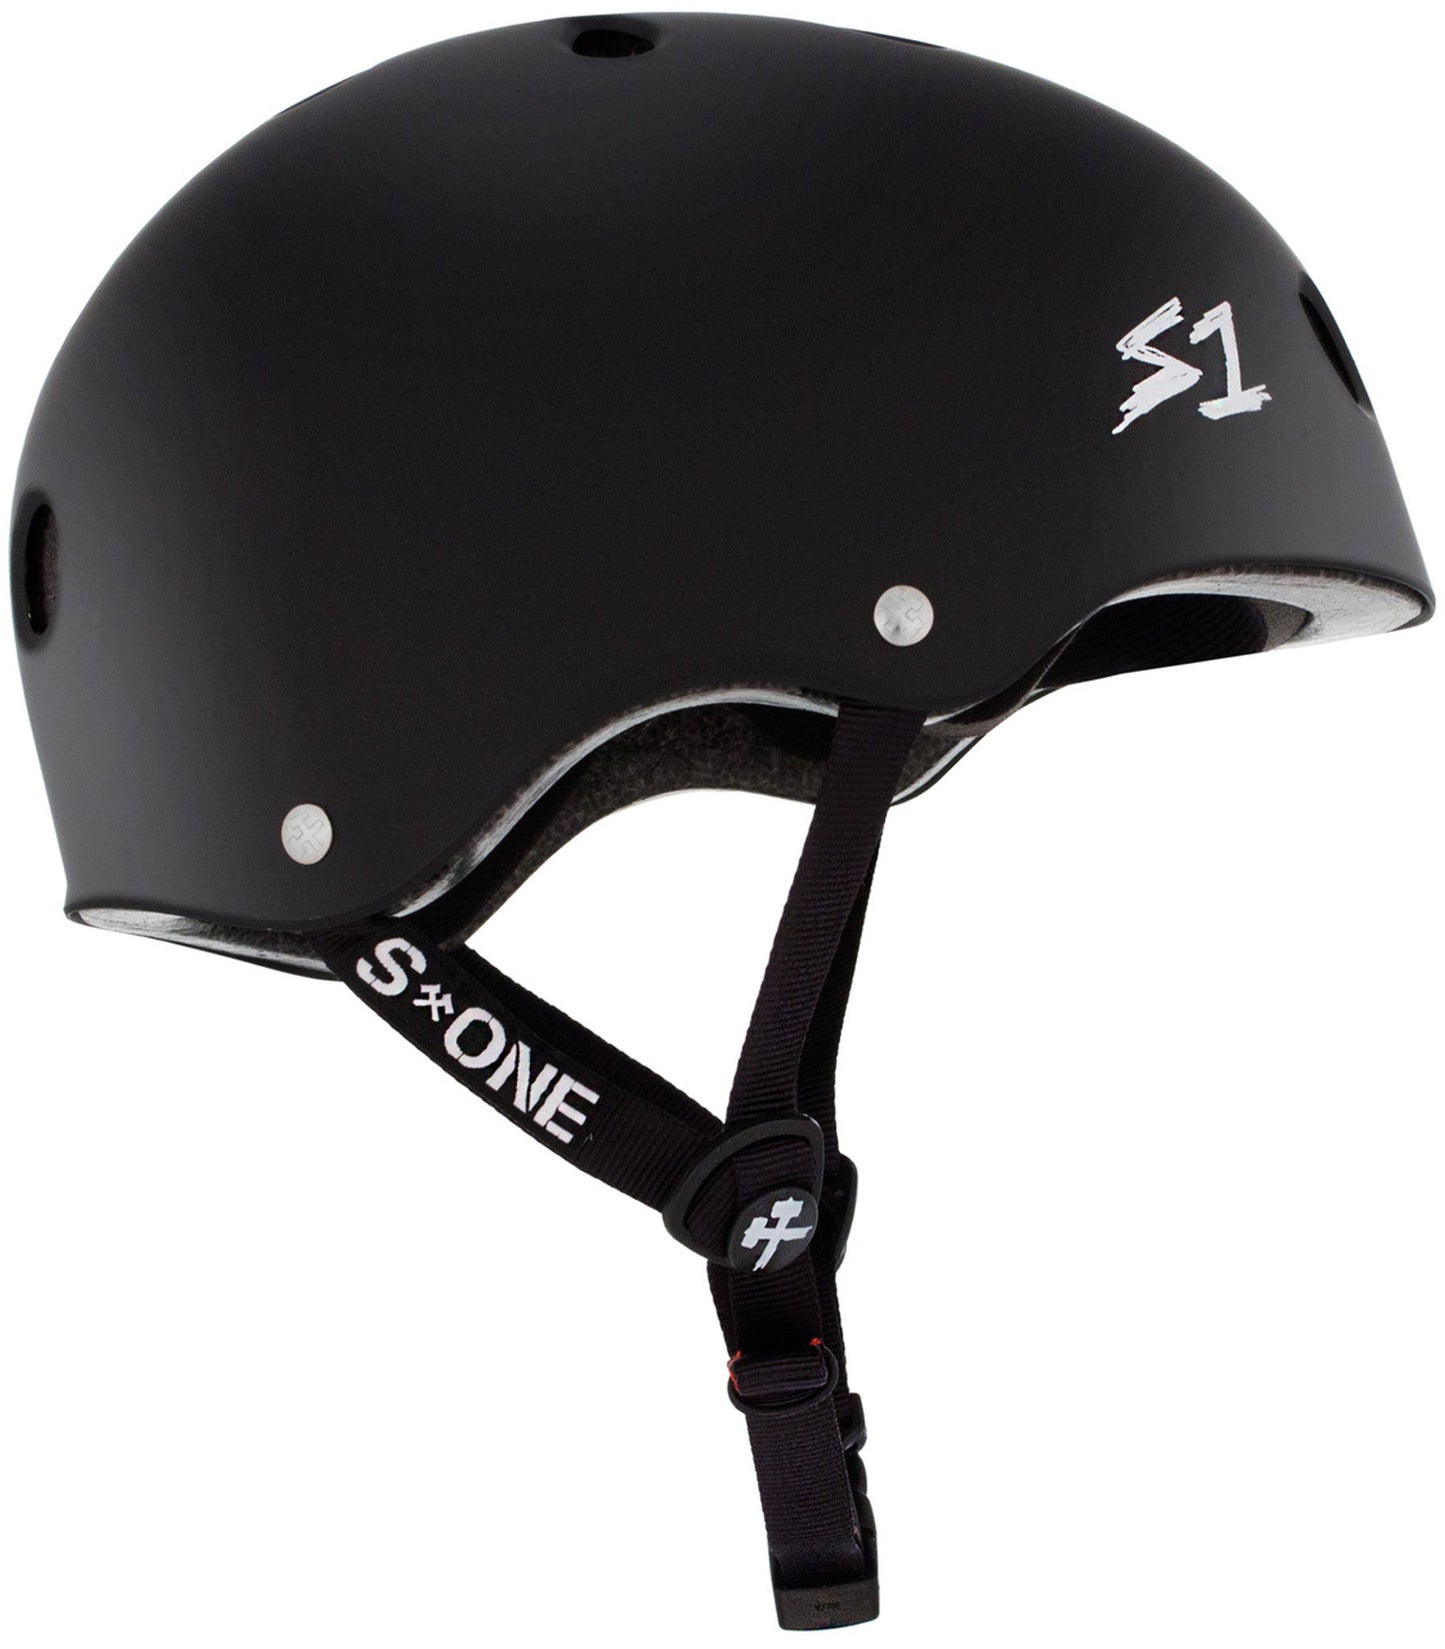 S-One Skateboard Helmet - Soul Performance Surf & Skate - S-One